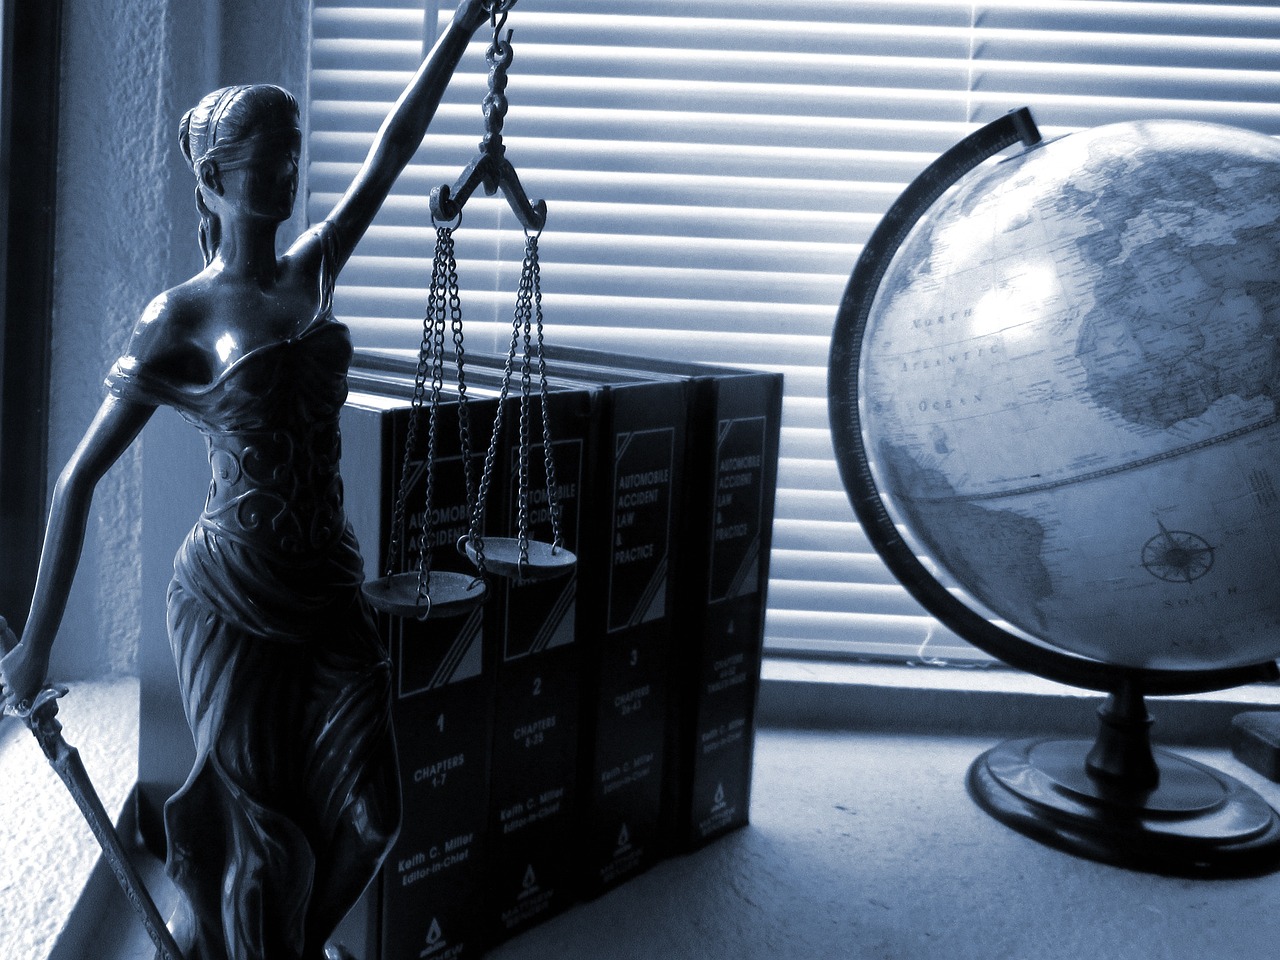 W obronie twoich praw - kancelaria adwokacka kluczem do sukcesu w sprawach prawnych